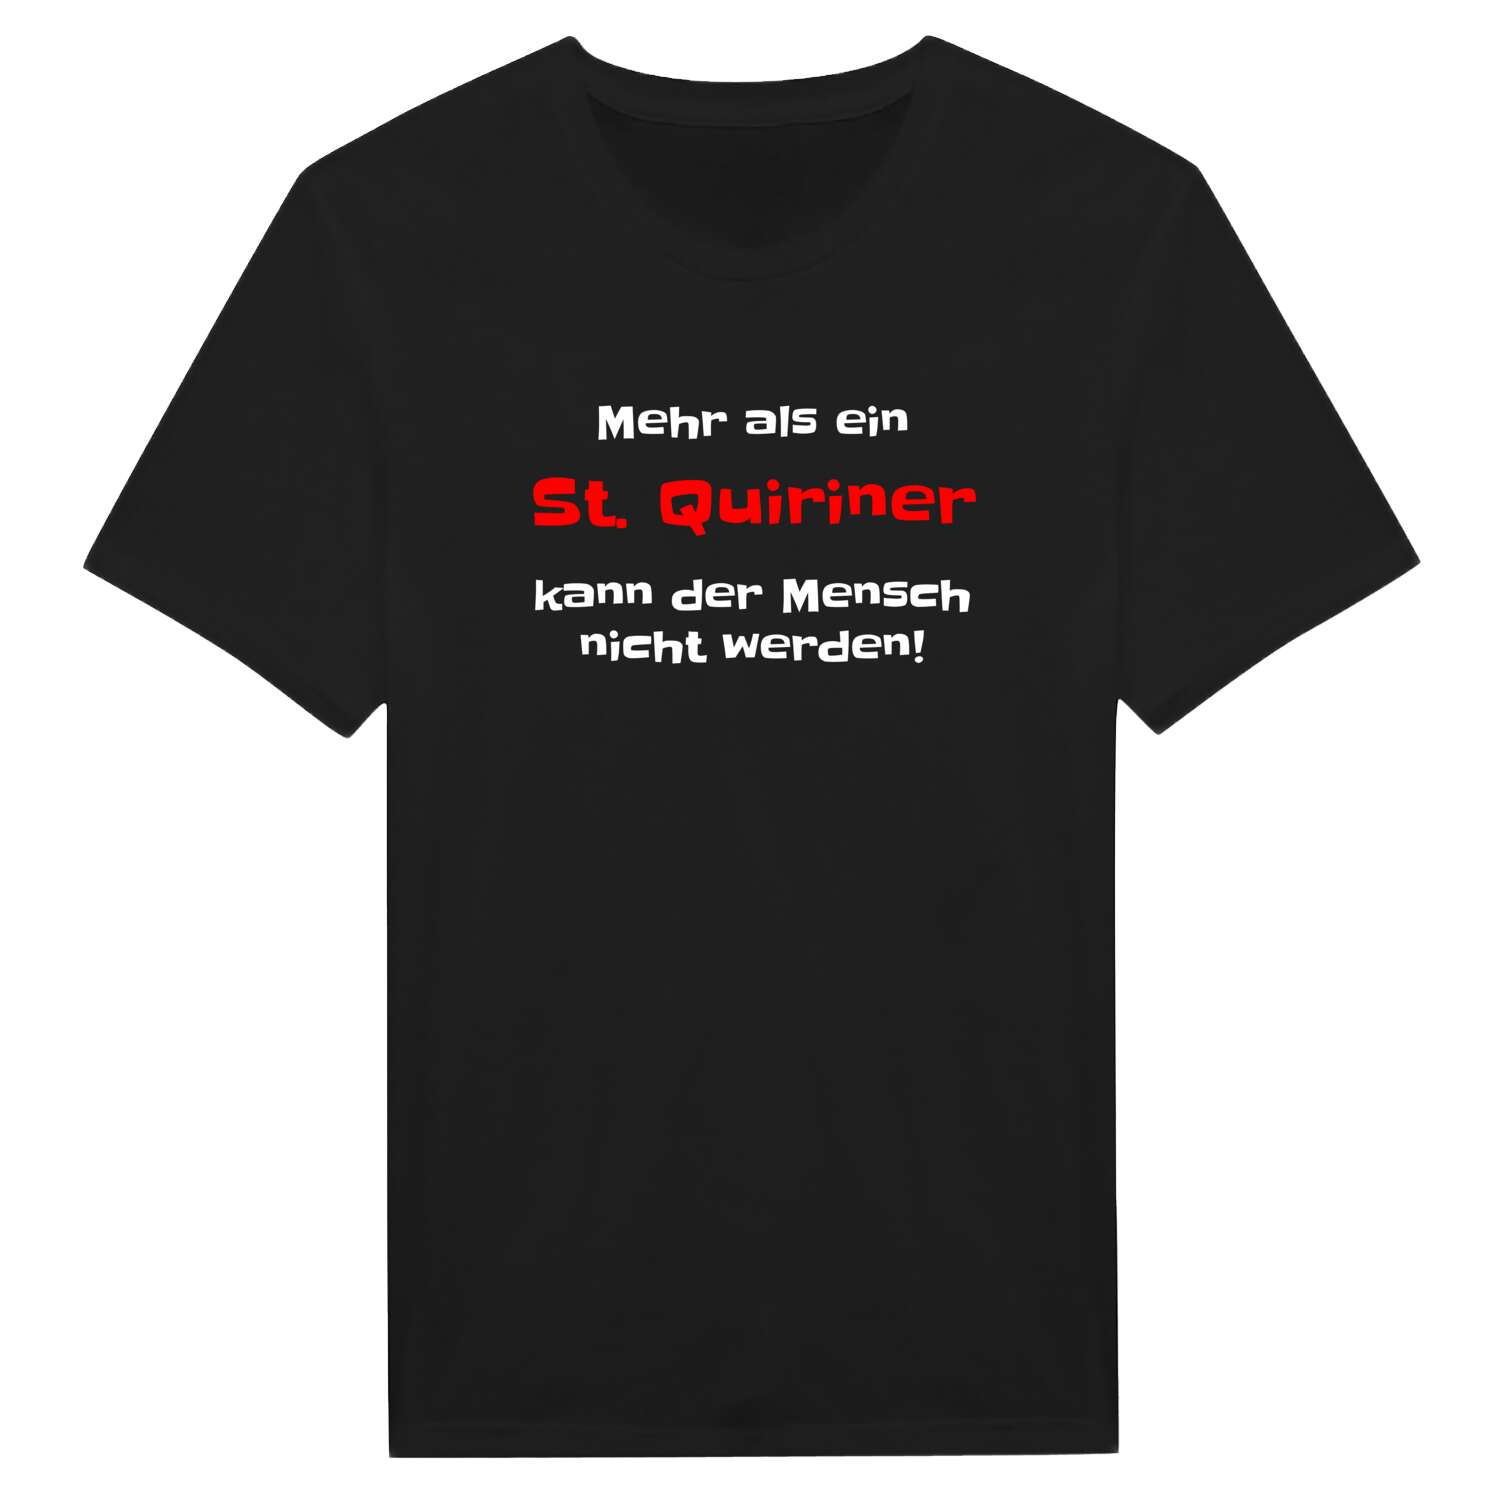 St. Quirin T-Shirt »Mehr als ein«